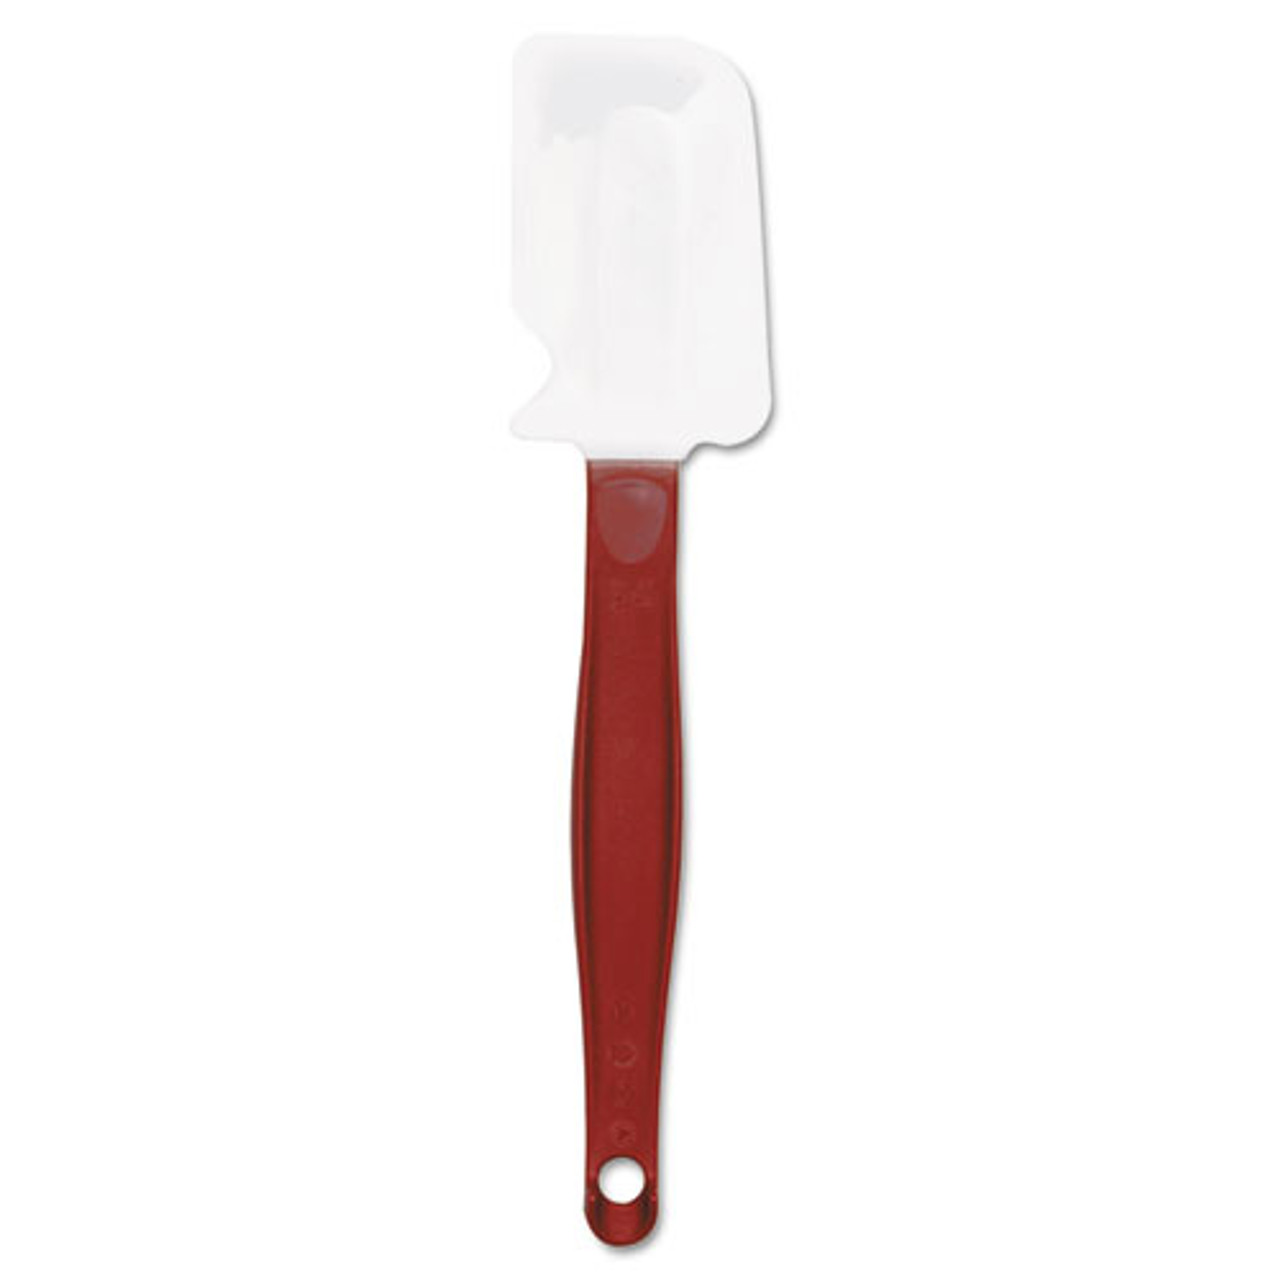 Rubbermaid High-Heat Cook's Scraper 9 1/2 in Red/White